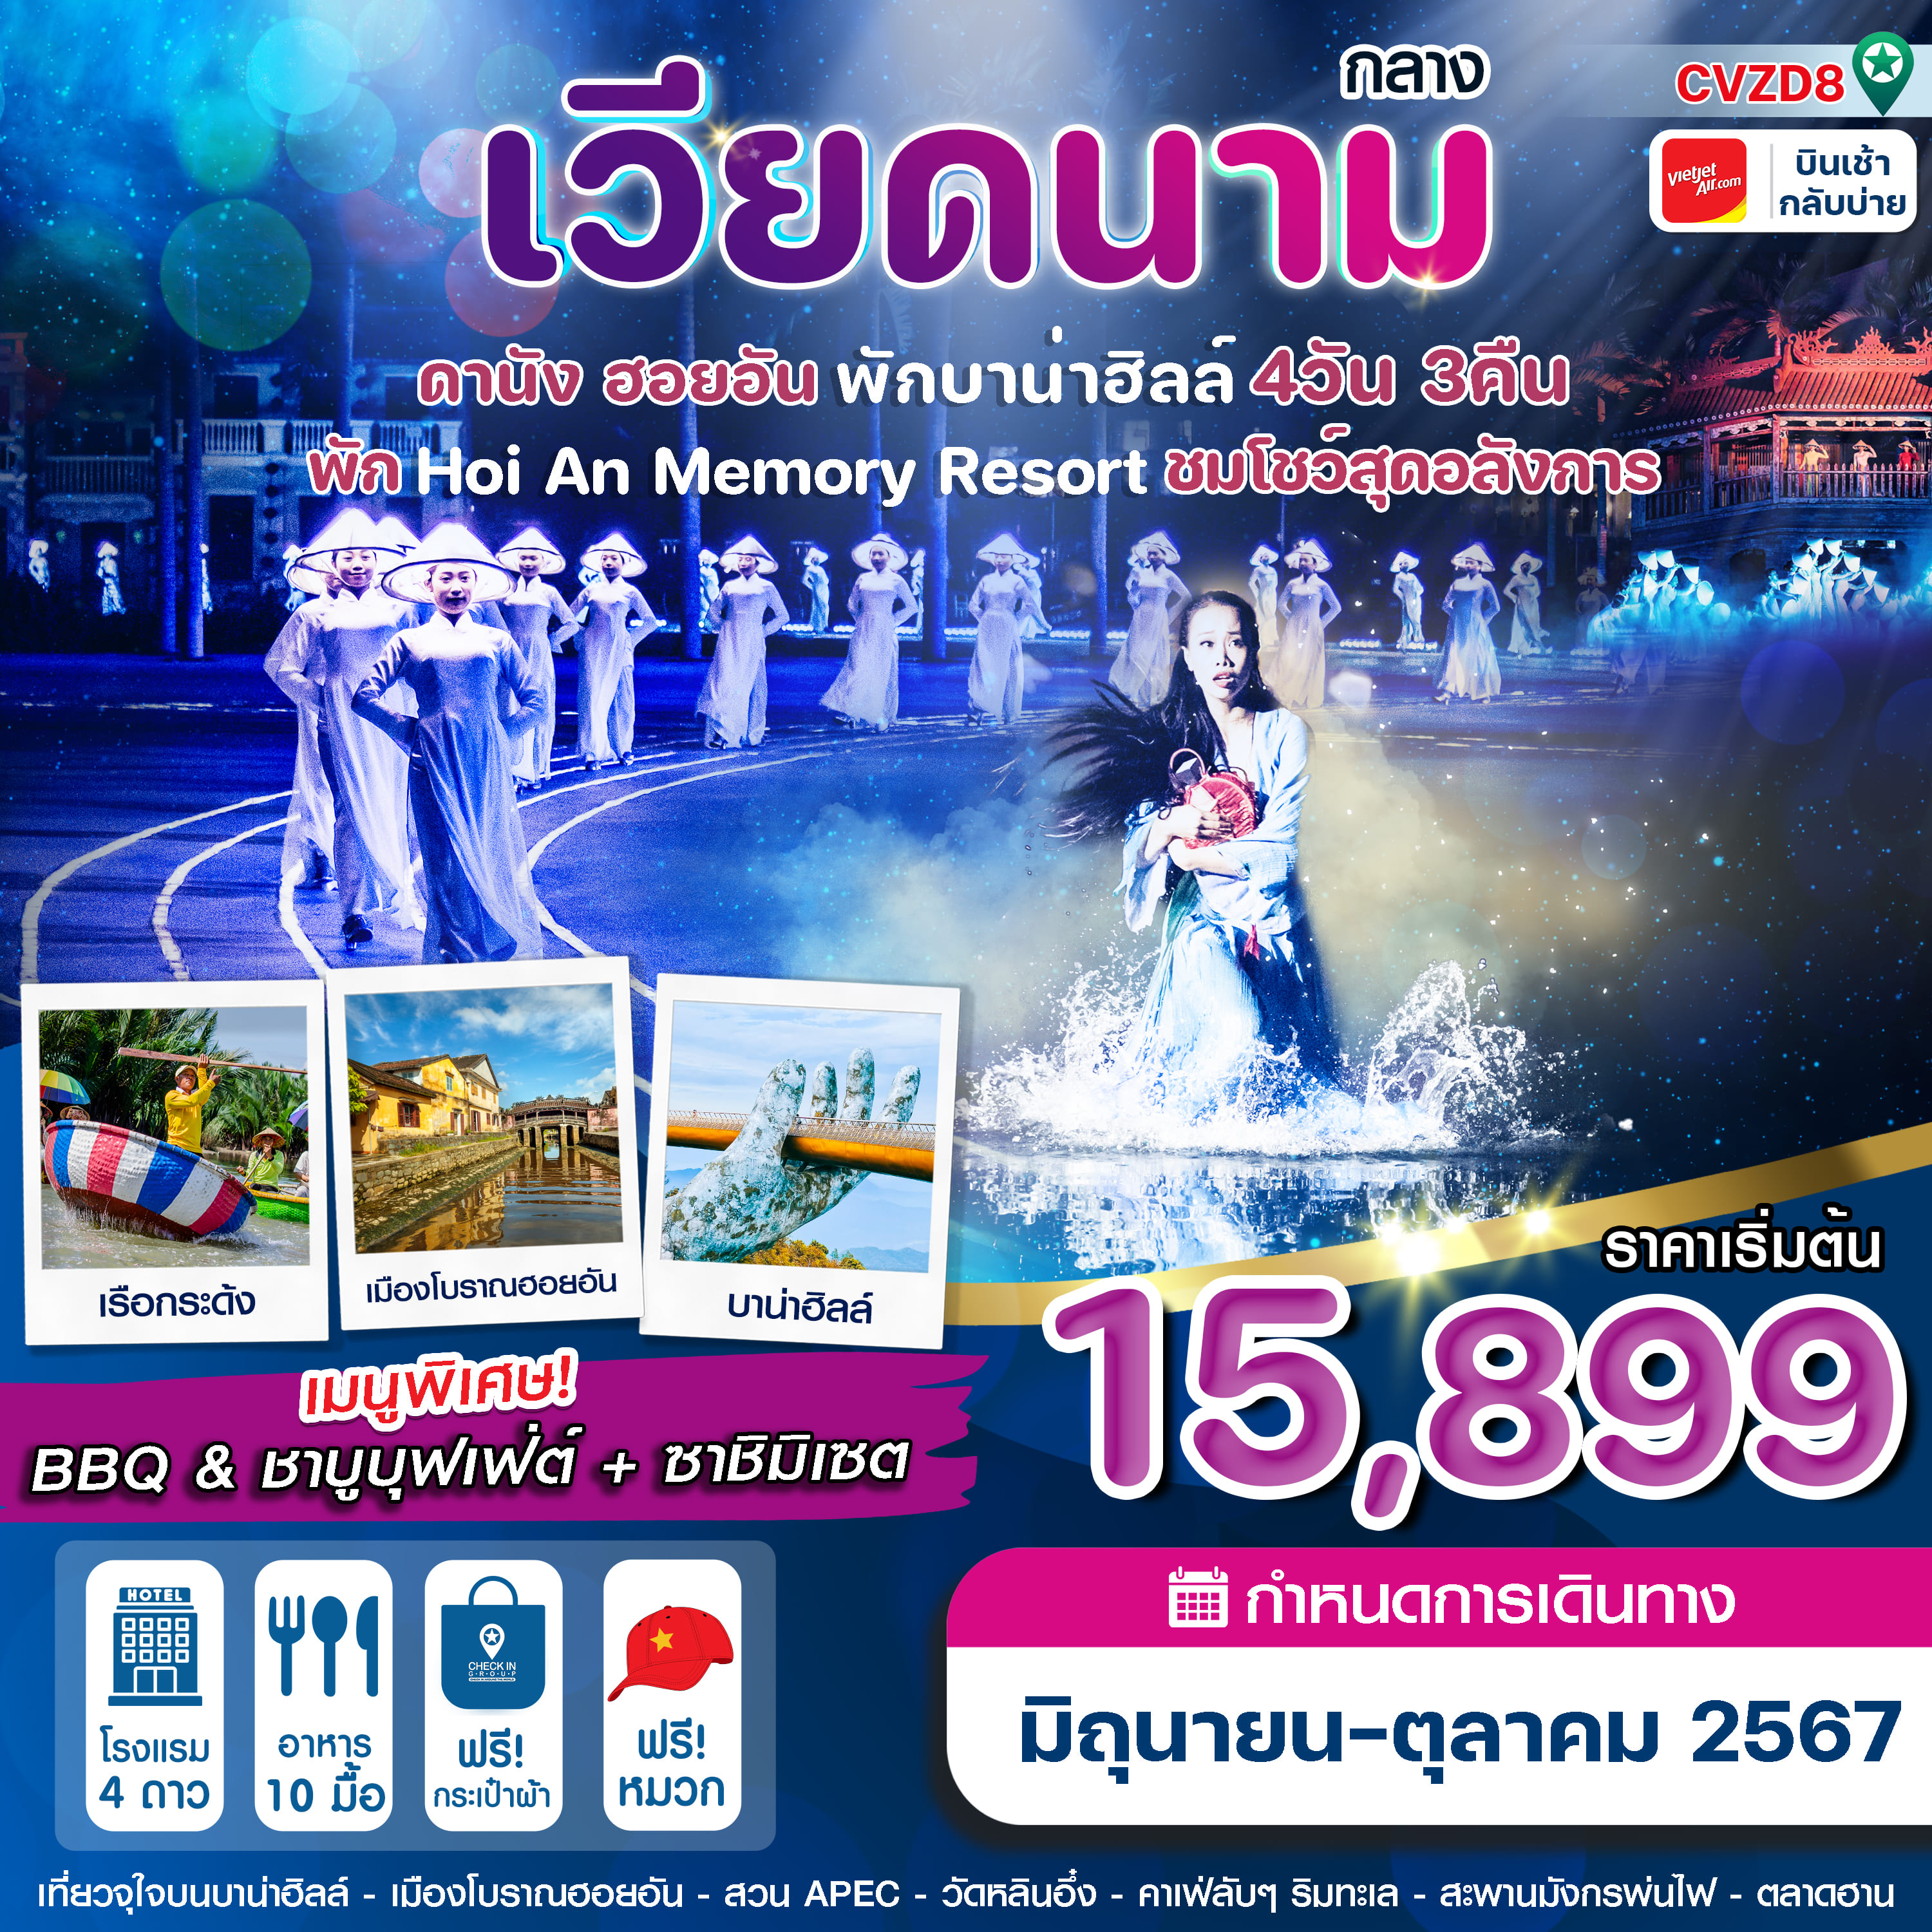 ทัวร์เวียดนาม ดานัง ฮอยอัน Memory Resort+Show พักบานาฮิลล์ 4วัน 3คืน (VZ)